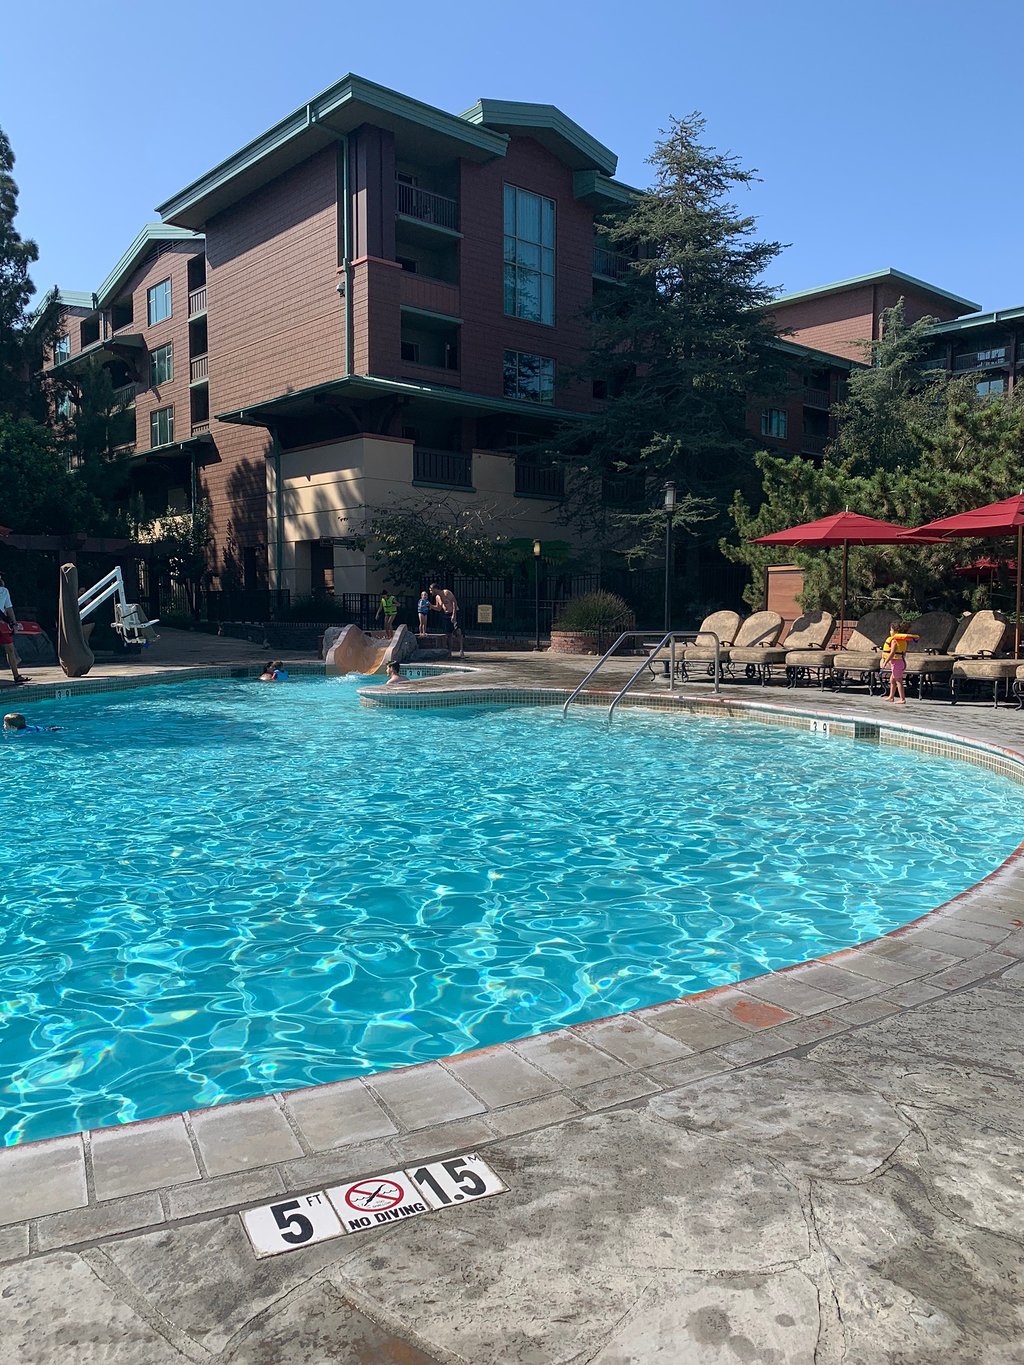 Disney’s Grand Californian Resort Pool Area